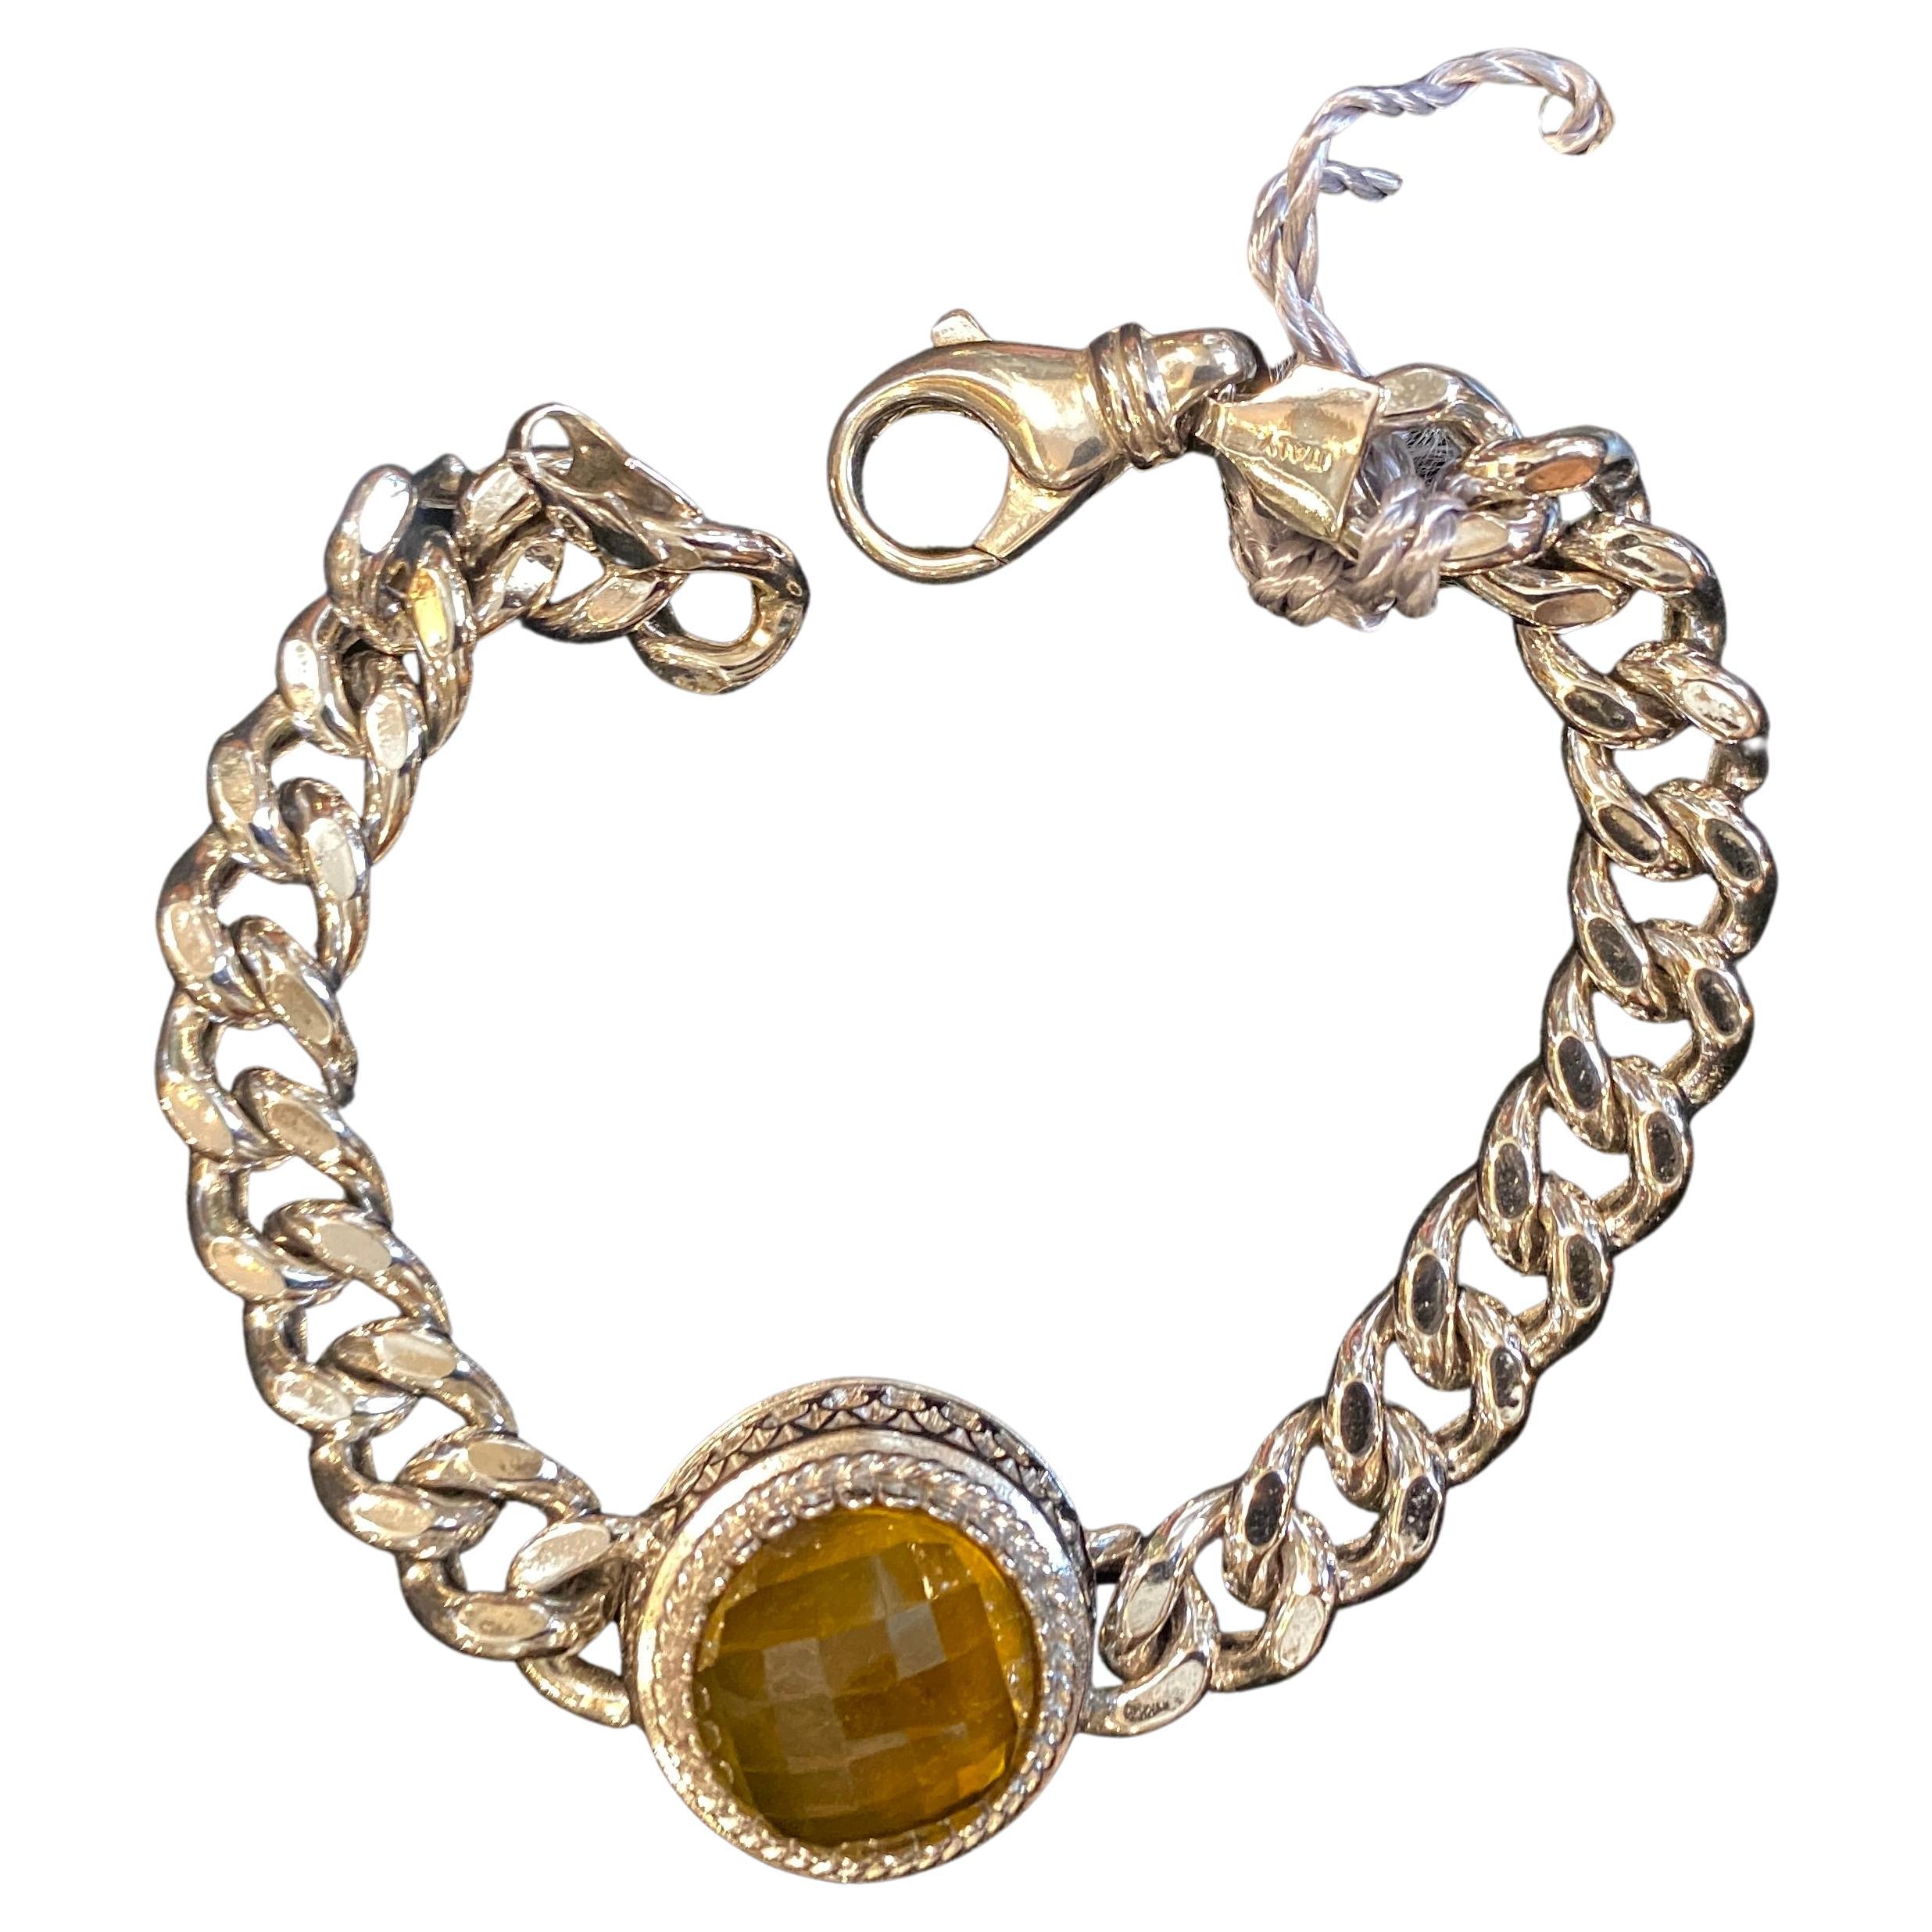 1990s Vintage Sterling Silver and Briolette Quartz Chain Bracelet by Anomis